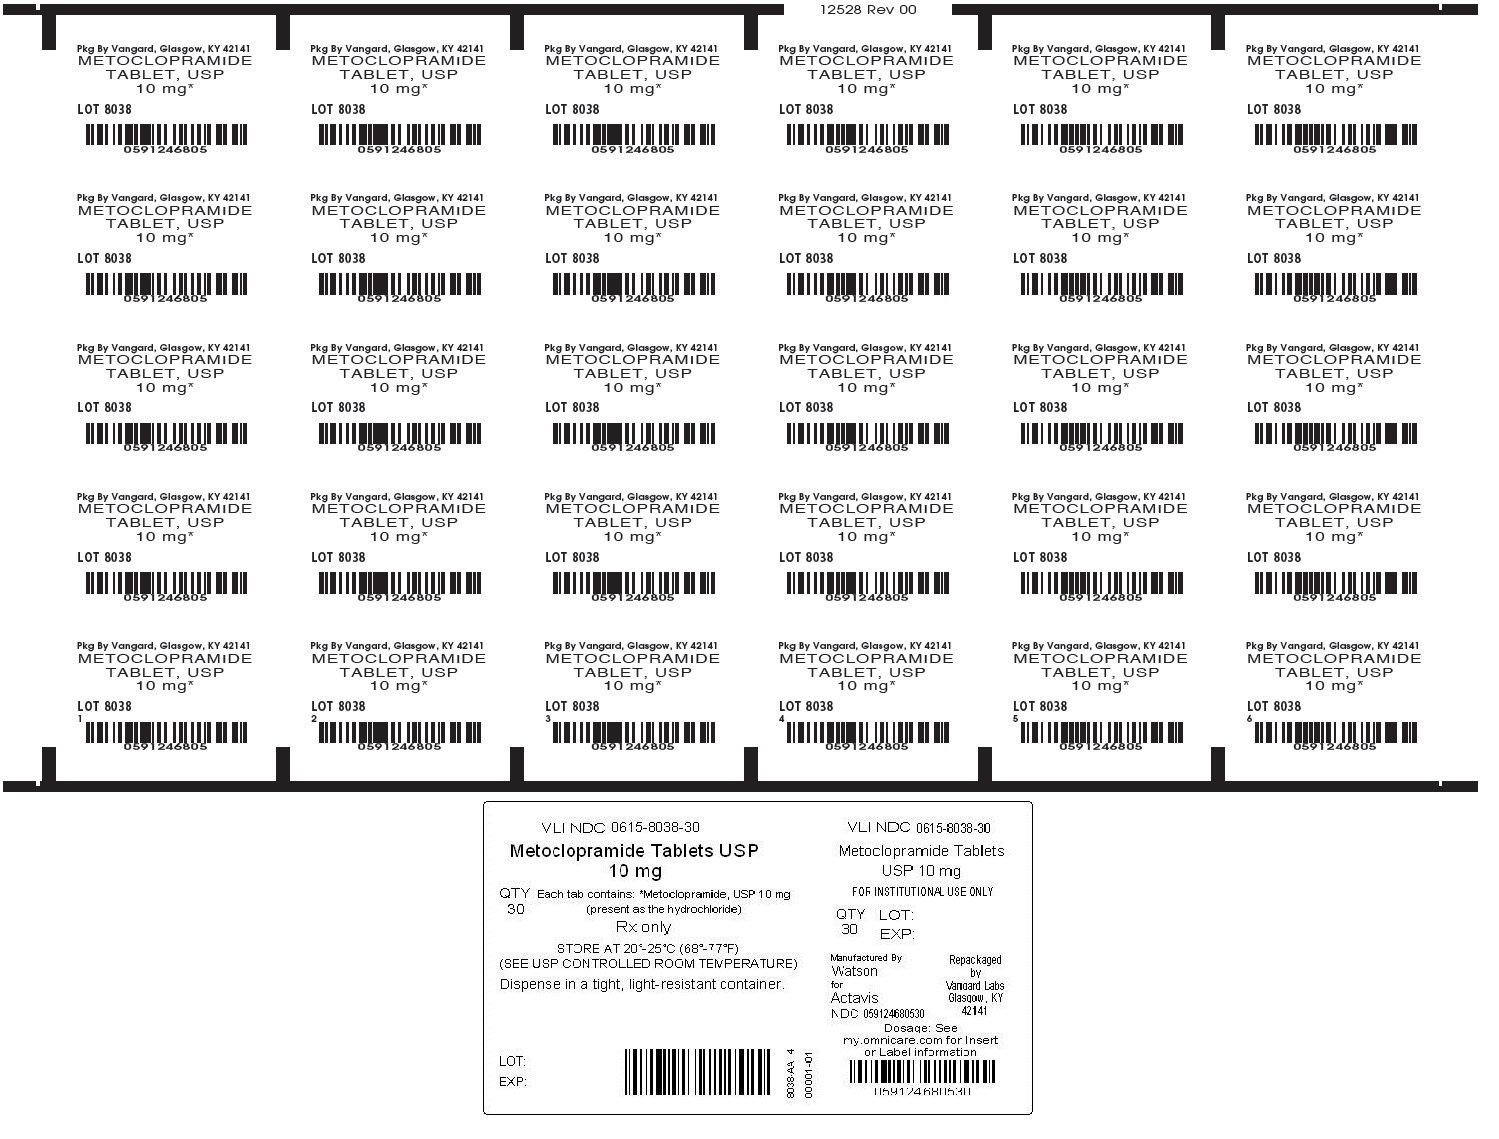 Metoclopramide 10 unit dose label